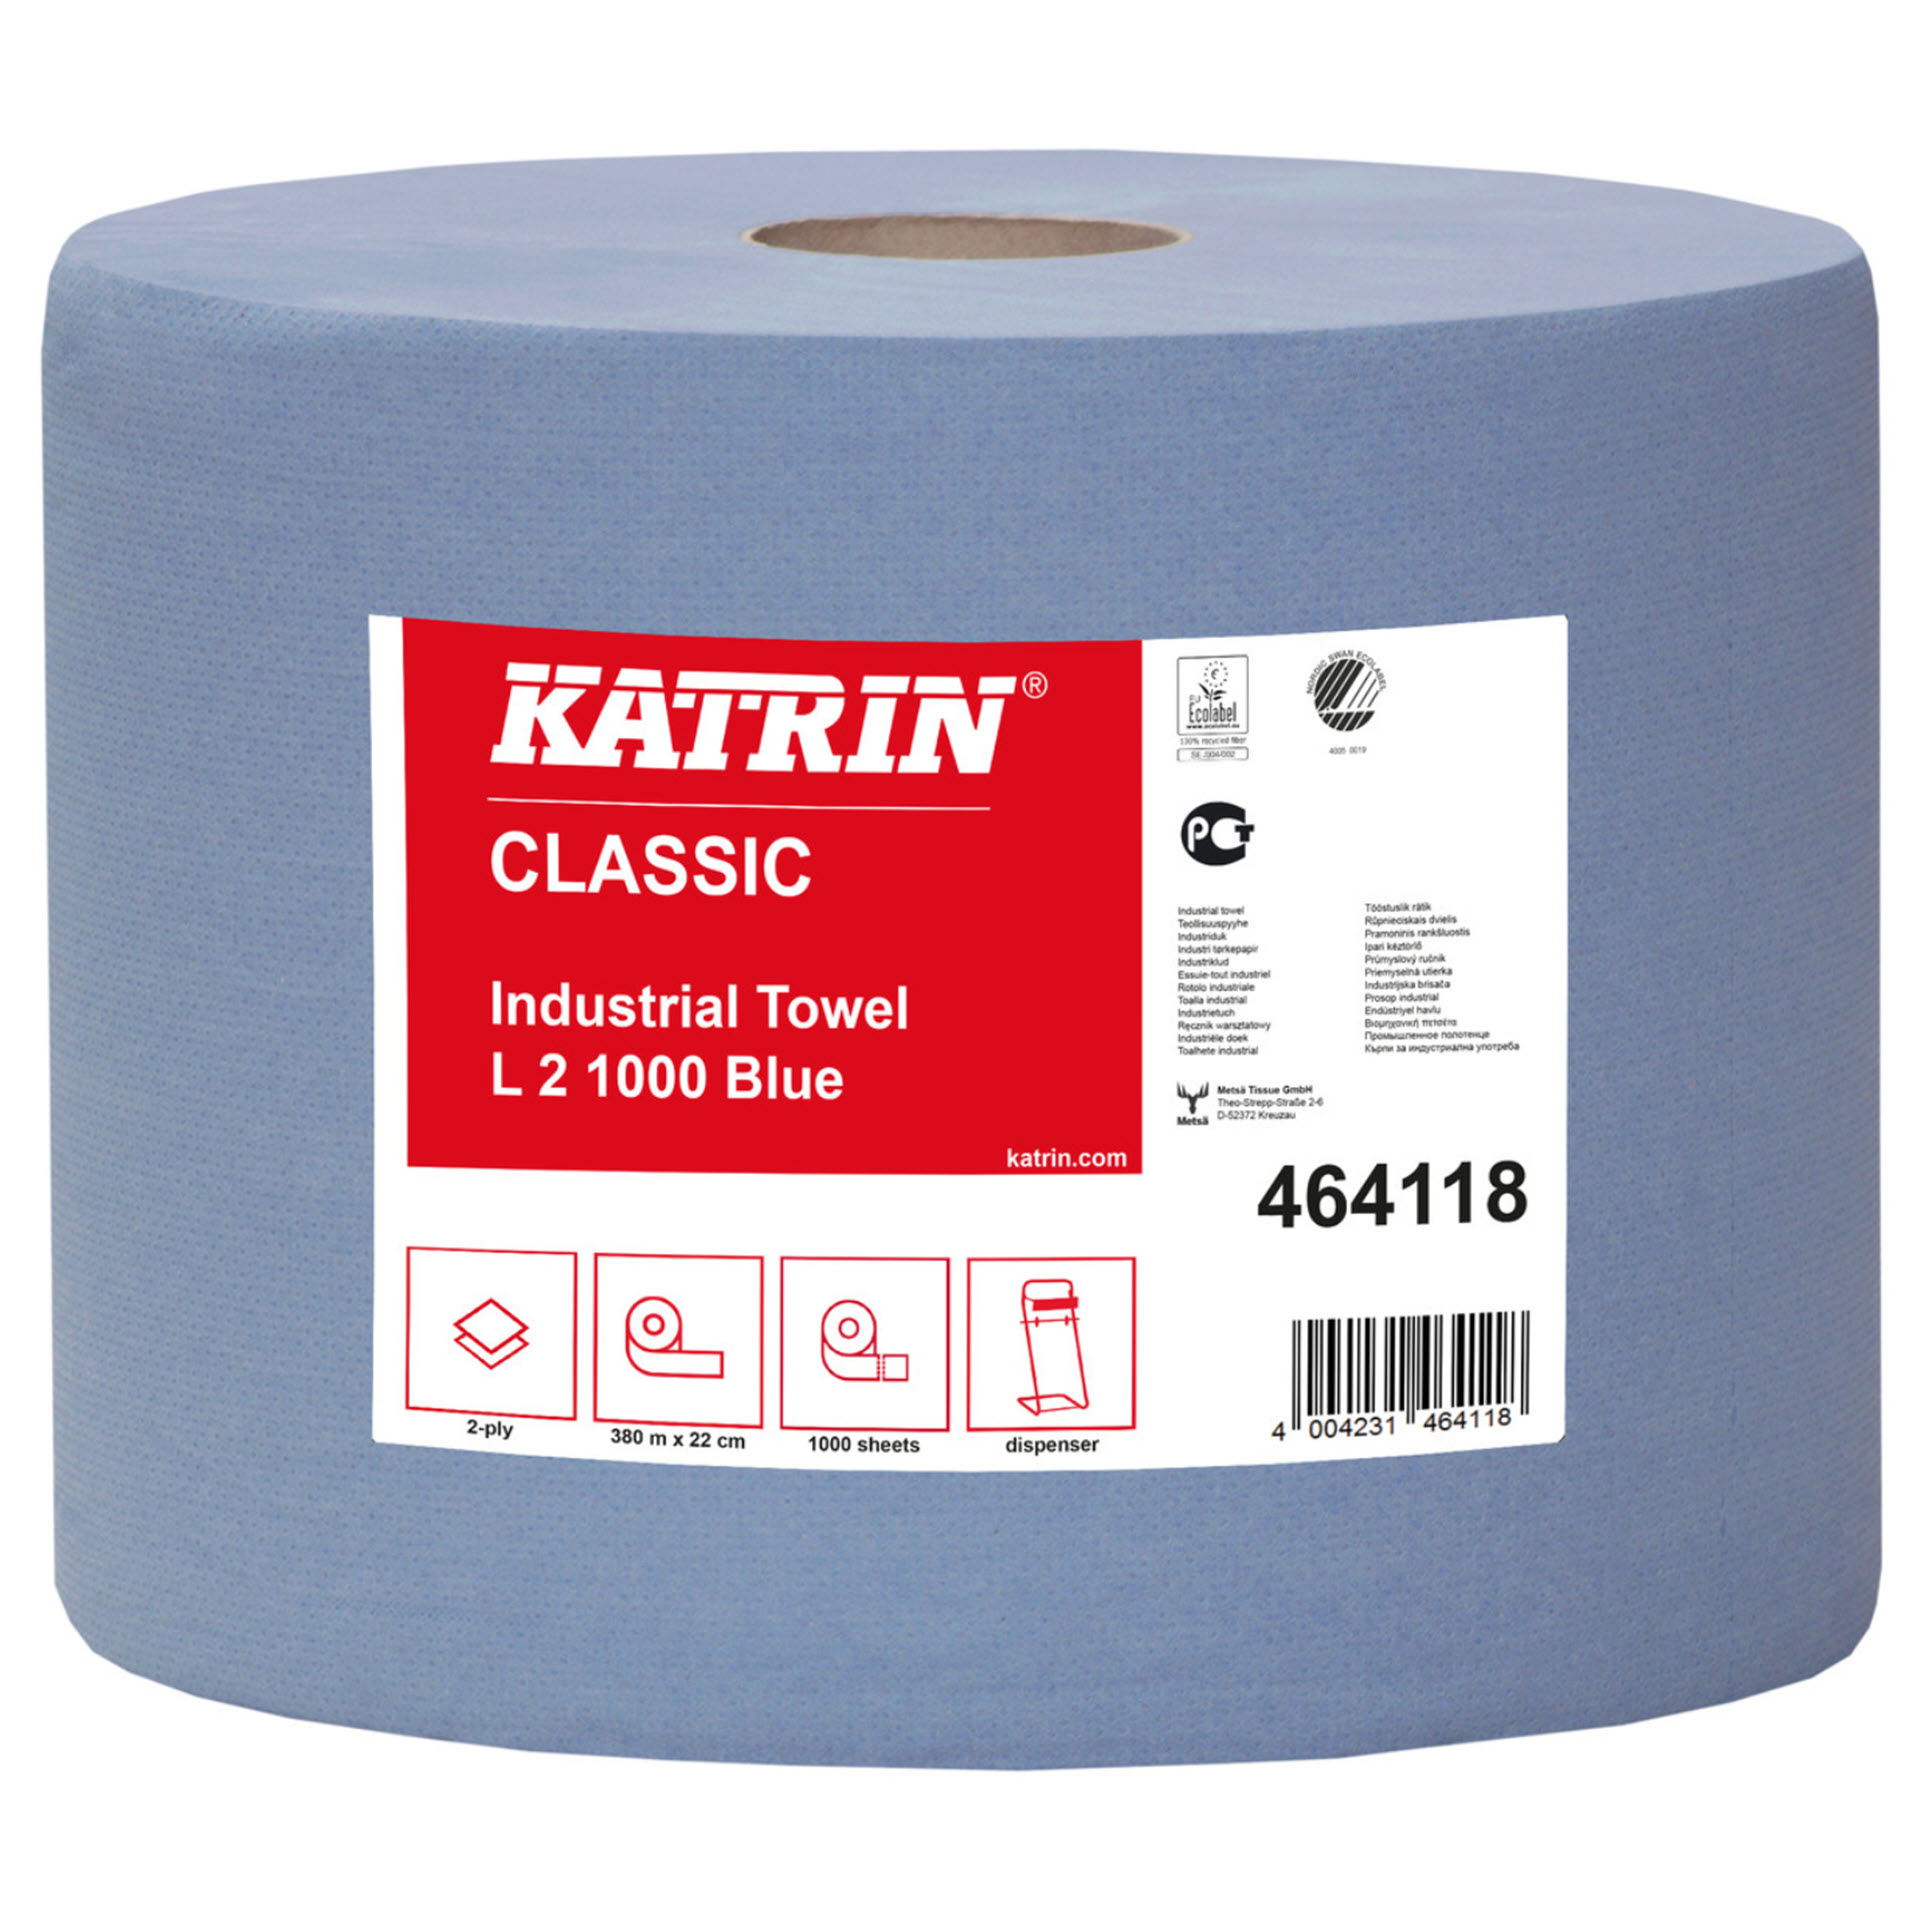 Katrin Classic Industrial Towel L2 Blue - 464118 - Putztuch / Tissue-Wischtuch